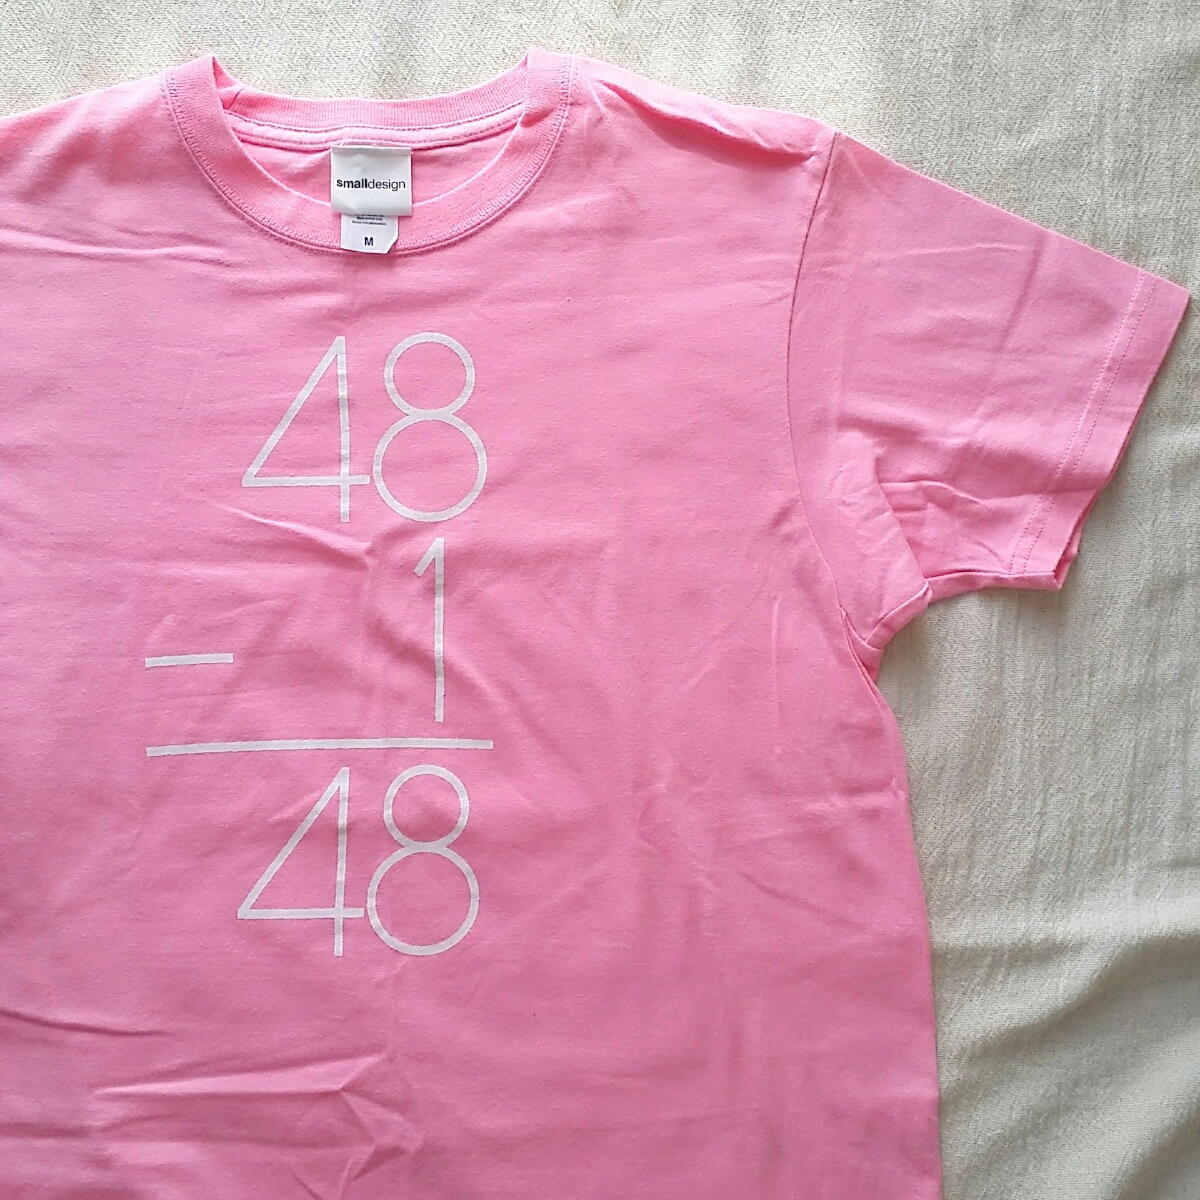 *[small design] розовый M* van T футболка товары новый товар *AKB б/у одежда * о себе обязательно чтение!*